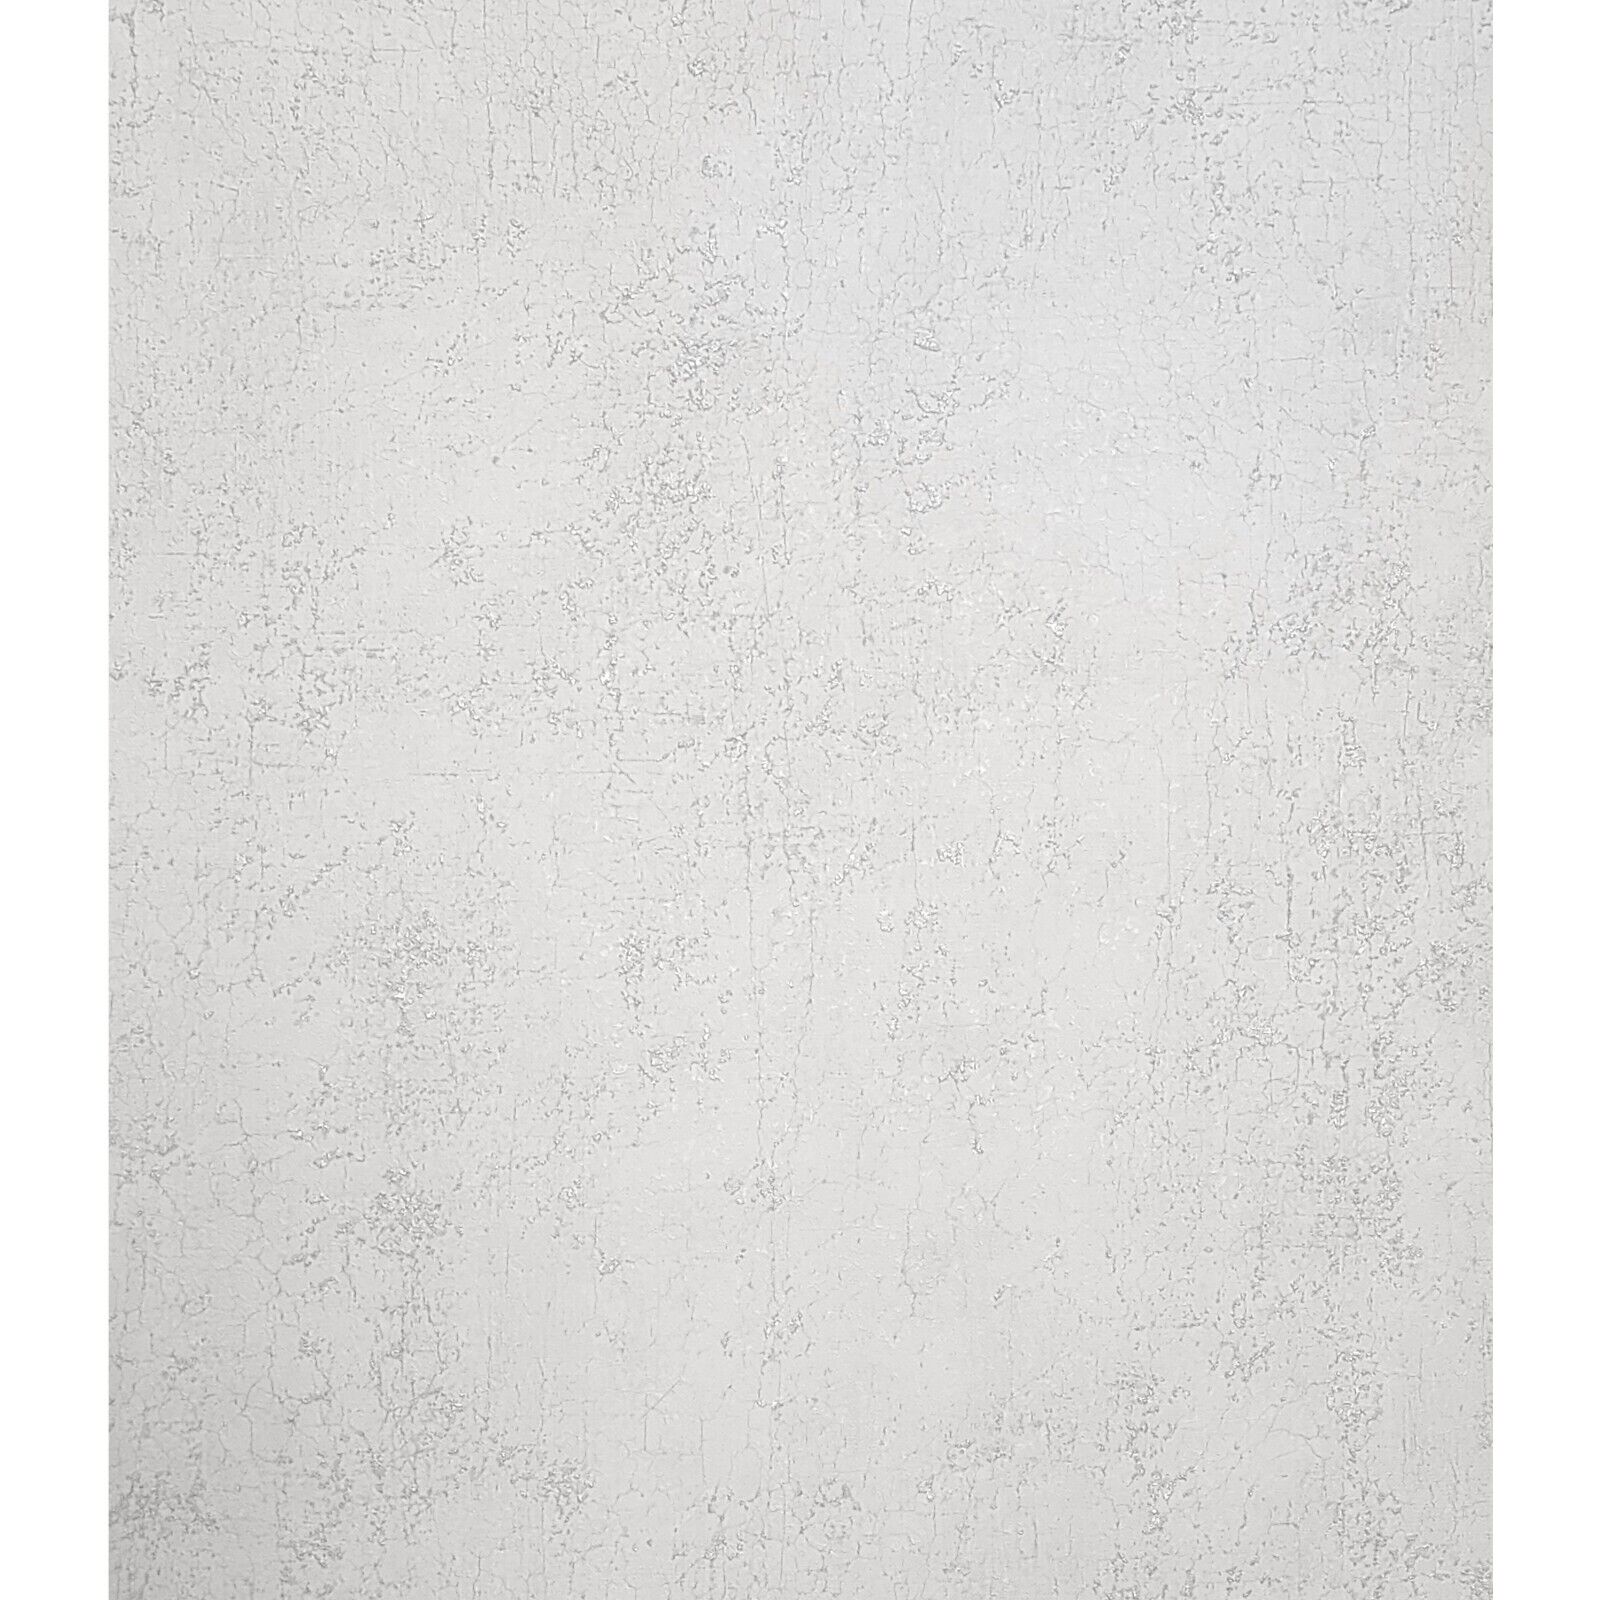 Damier wallpaper — Maison Martin Morel